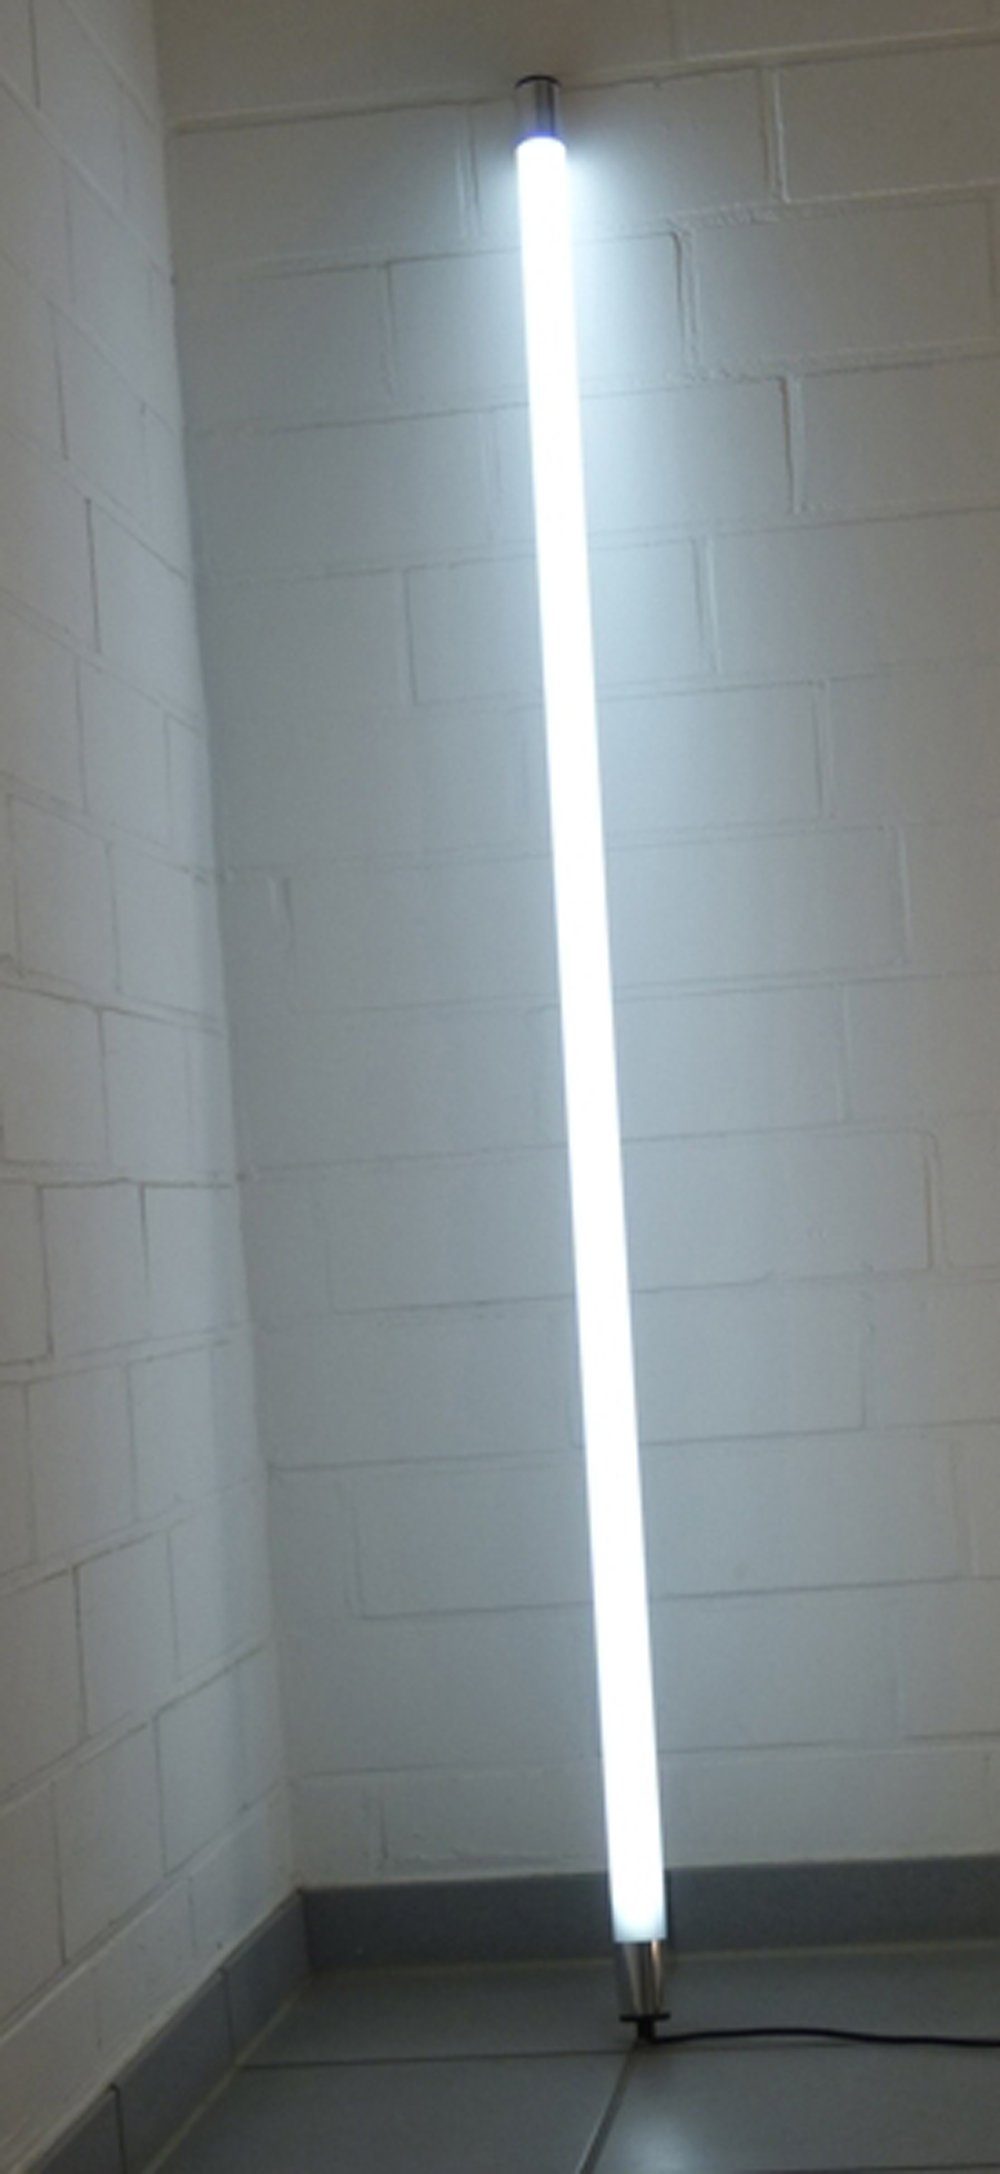 XENON LED Wandleuchte LED Leuchtstab Satiniert 1,23m Länge 2000 Lumen IP44 Außen Kalt Weiß, LED Röhre T8, Xenon Kalt Weiß